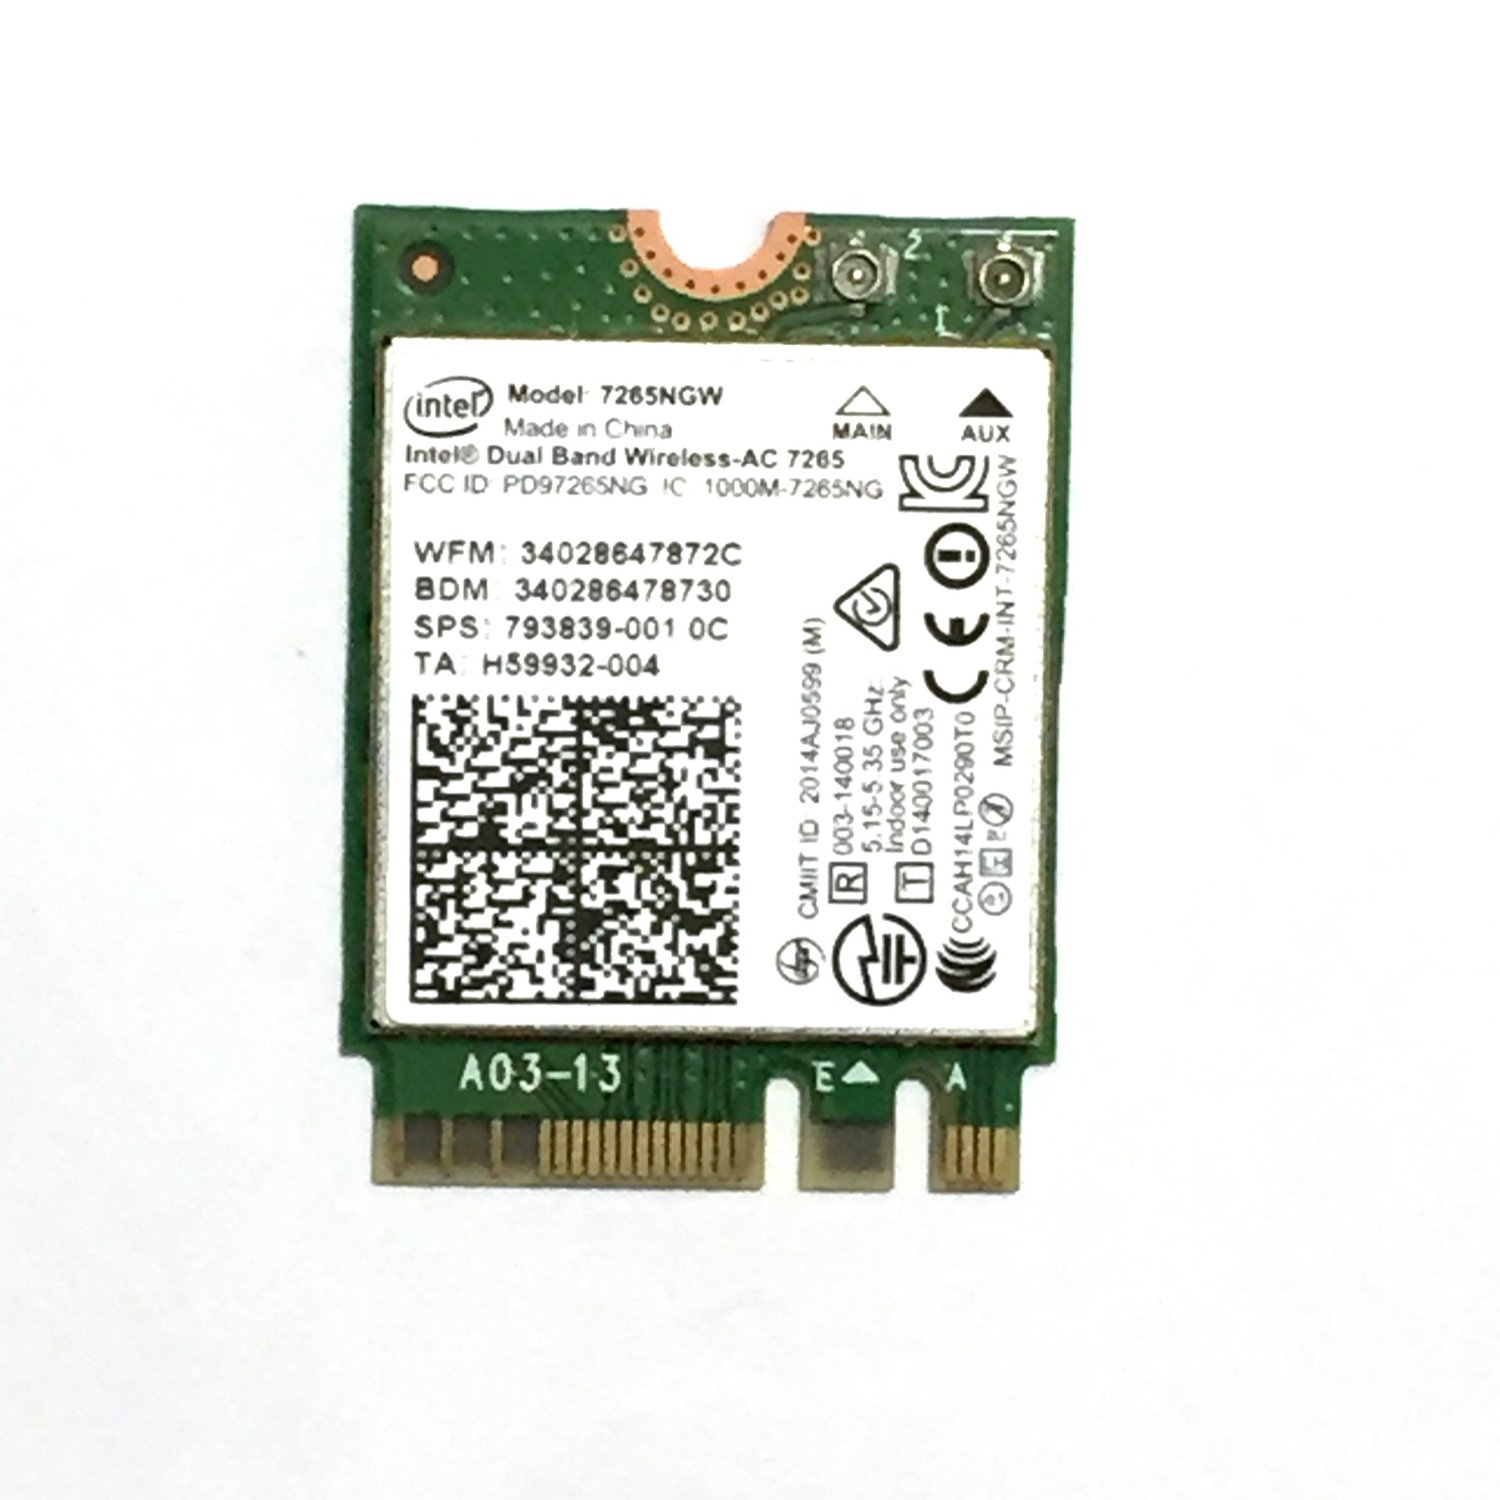 Intel Dual Band Wireless-AC 7265 - Network Adapter - M.2 Card - Bluetooth 4.0, Wi-Fi 5 7265.NGWWB.W - C2000